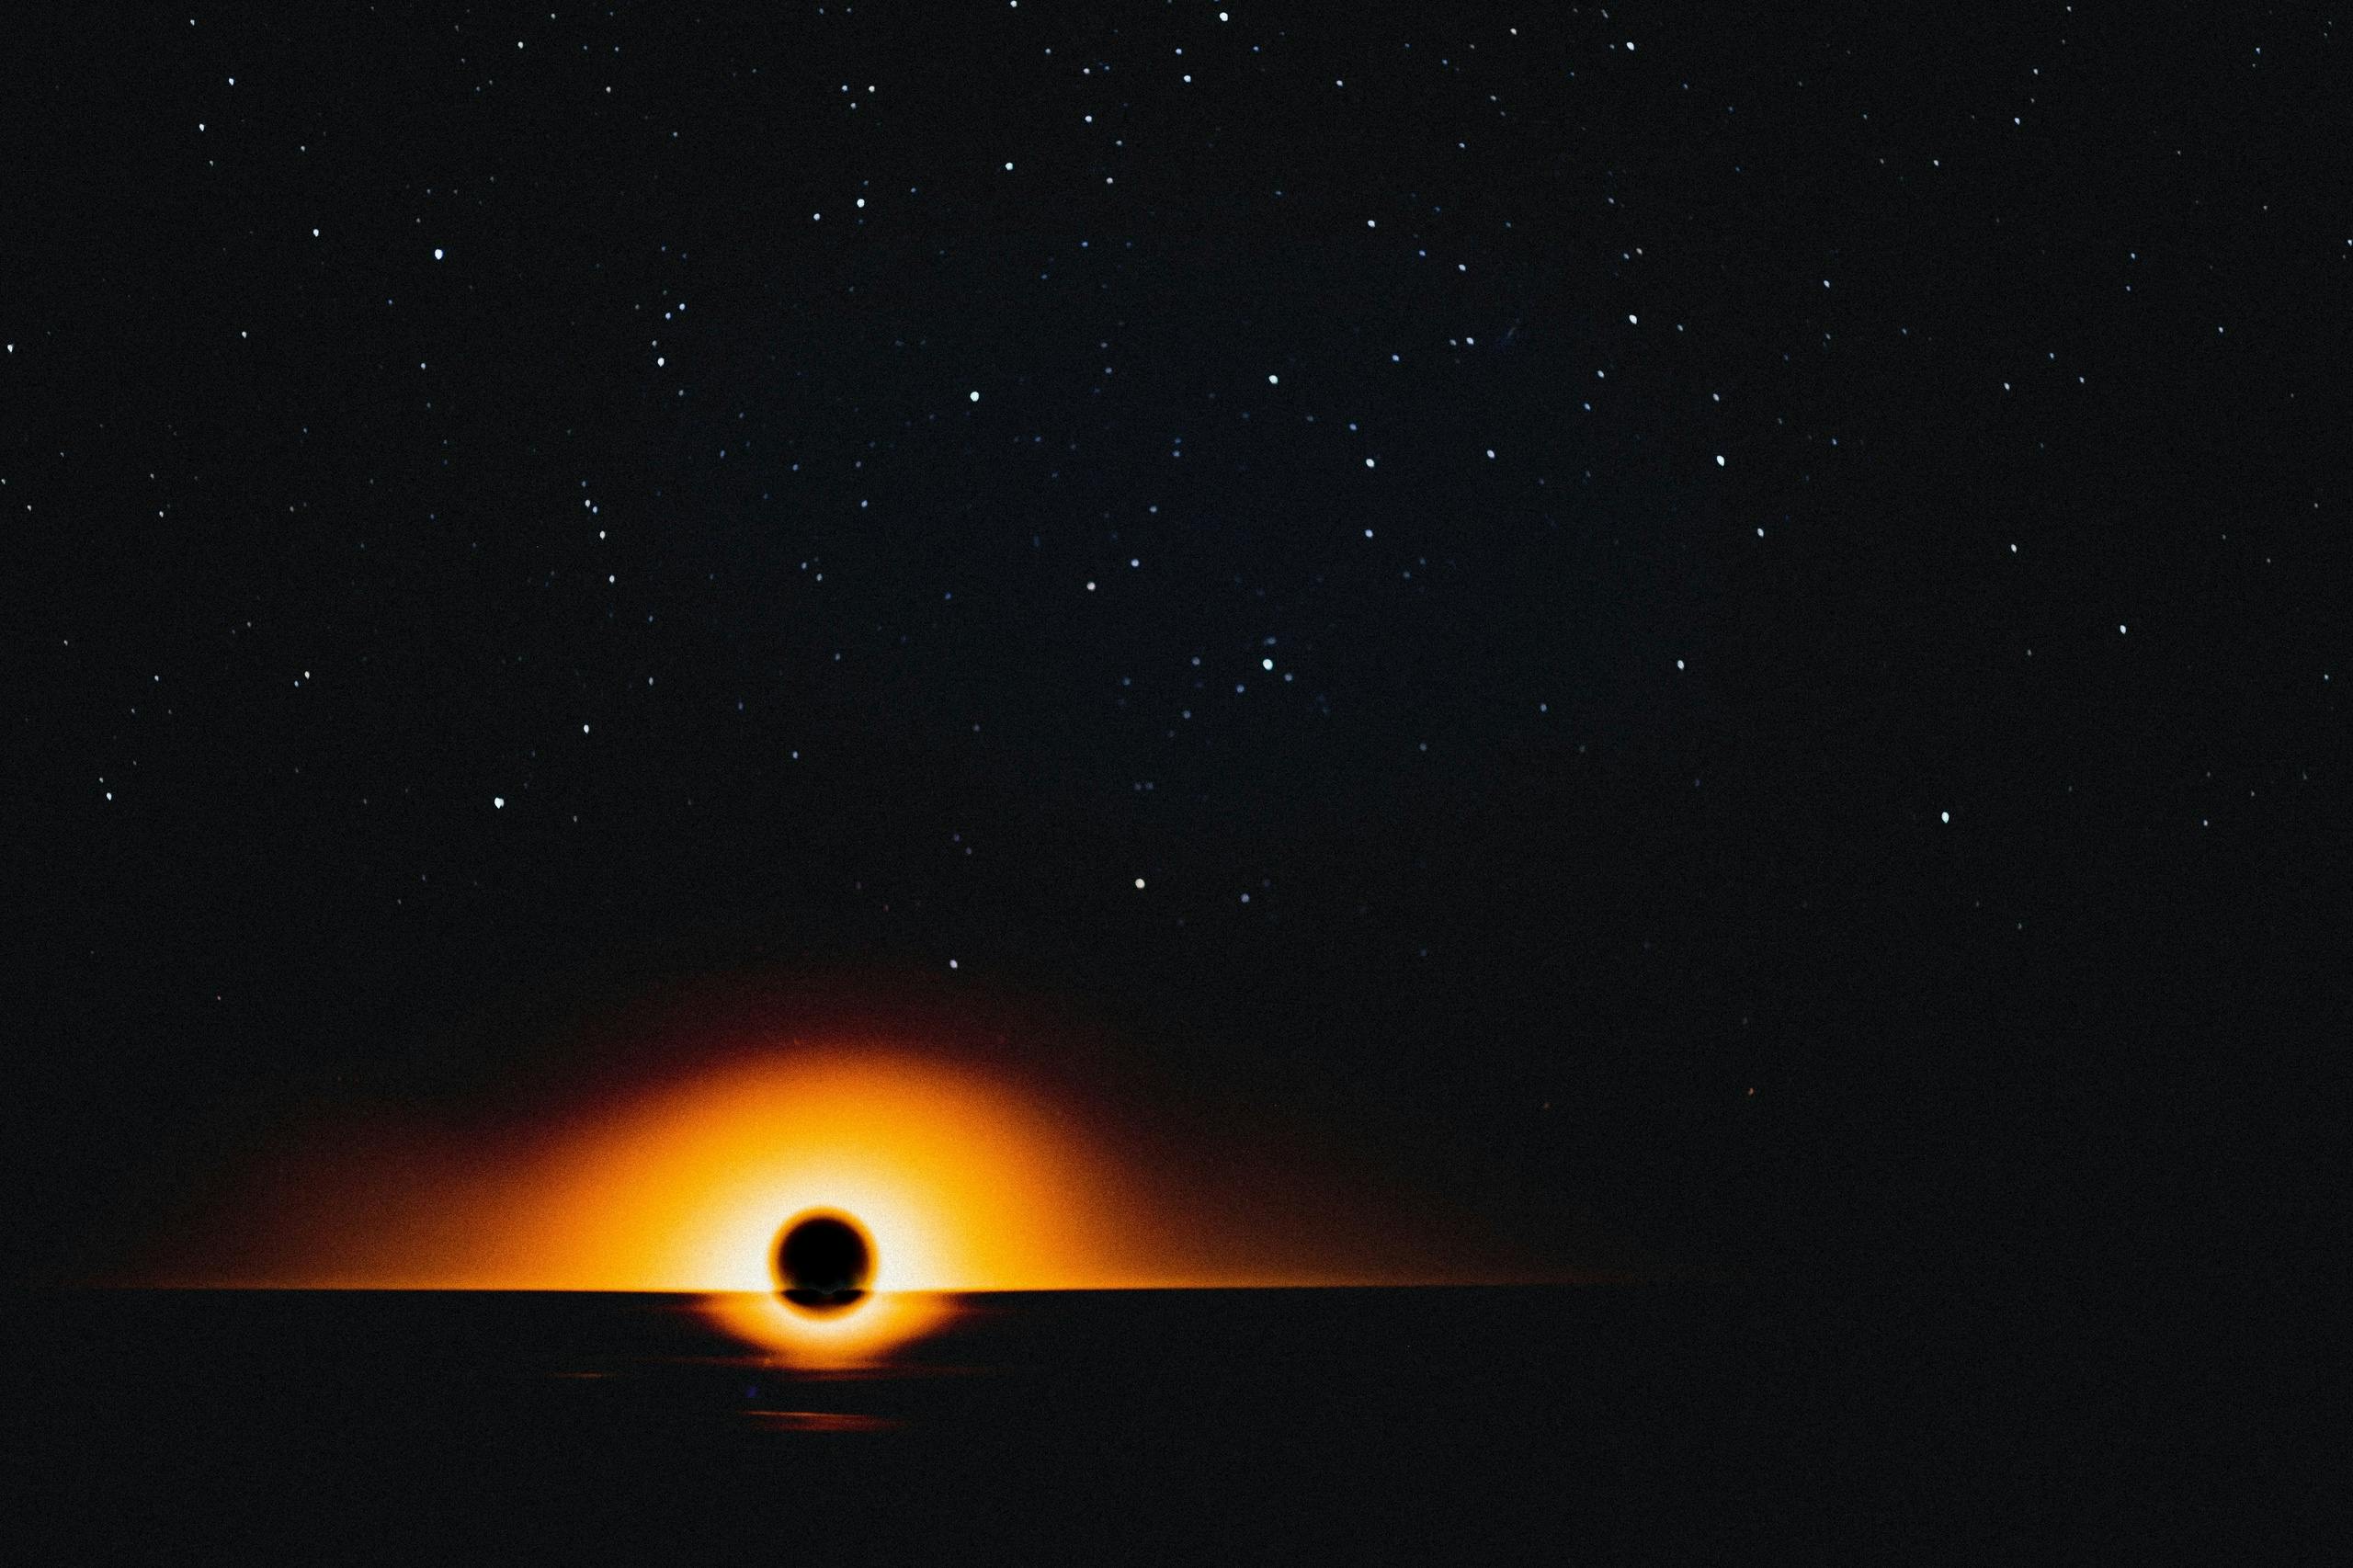 La NASA condivide le immagini di enormi buchi neri: “Potrebbero essere costituiti da miliardi di stelle”